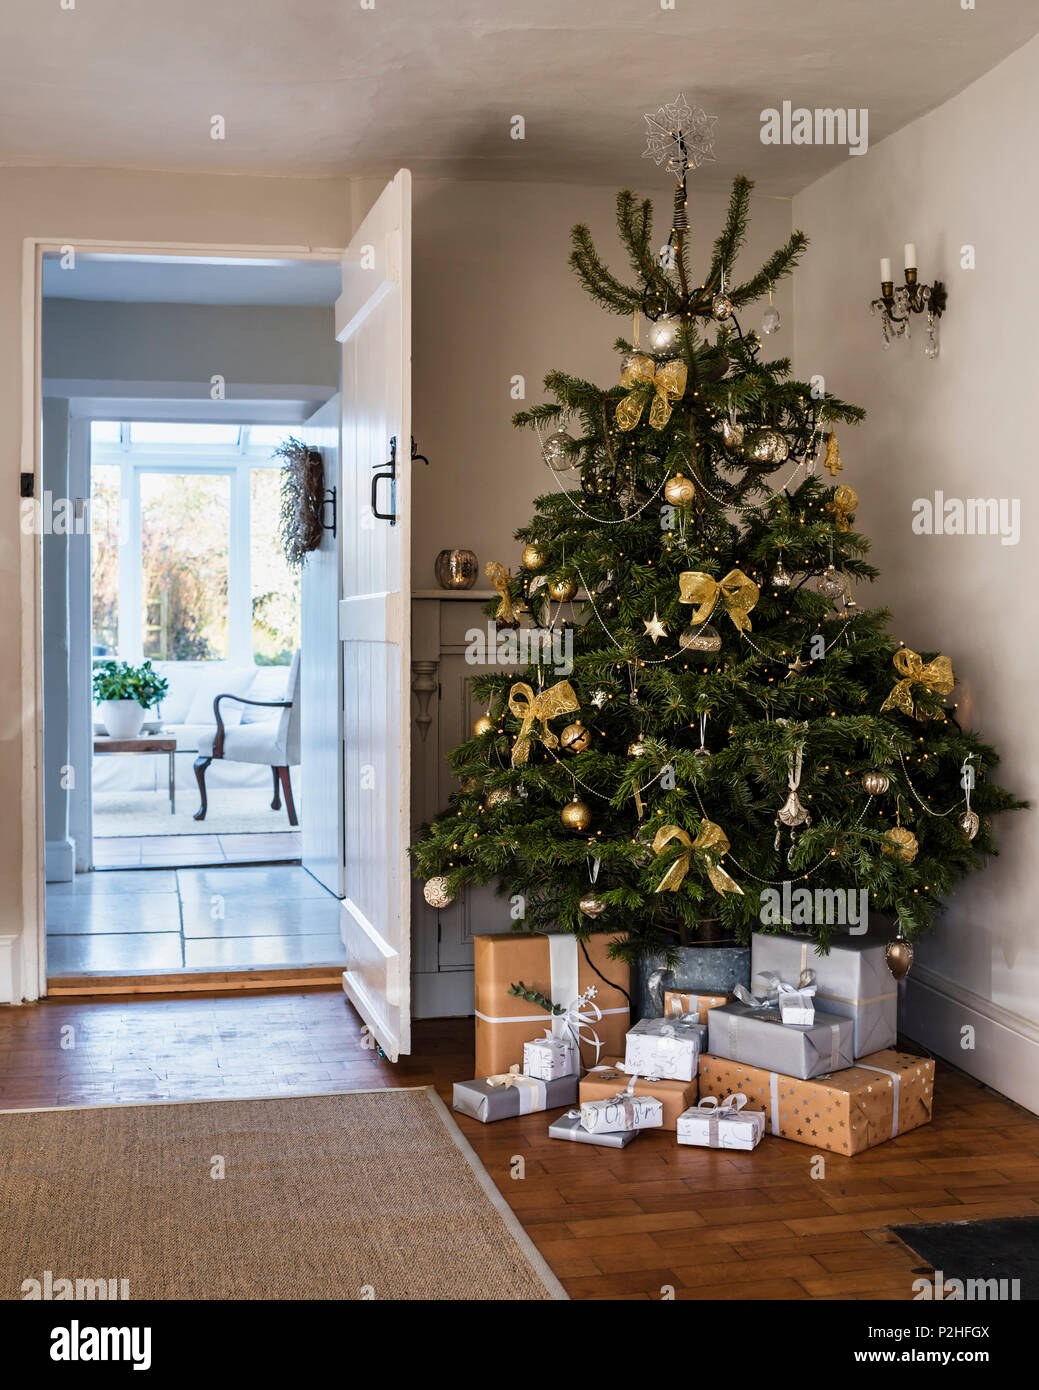 Albero di Natale decorato con archi e baubles dal paese Brocante. Il  tappeto è da Ikea Foto stock - Alamy